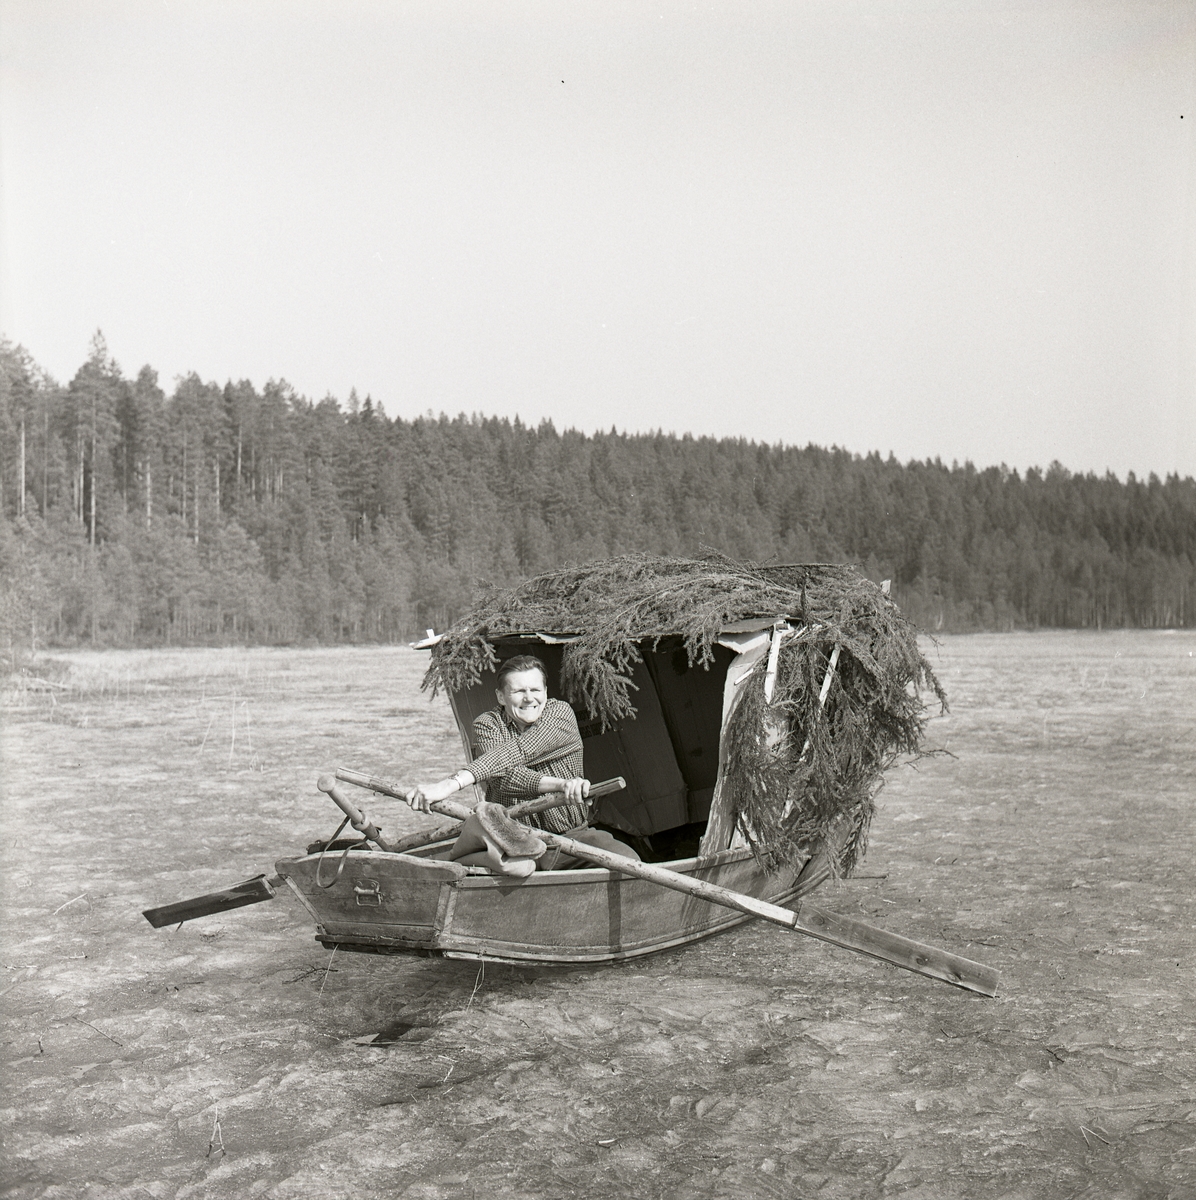 Hilding sitter i en eka med ett påbyggt glömsle och ror på en isbelagd sjö, Stråsjön april 1964.